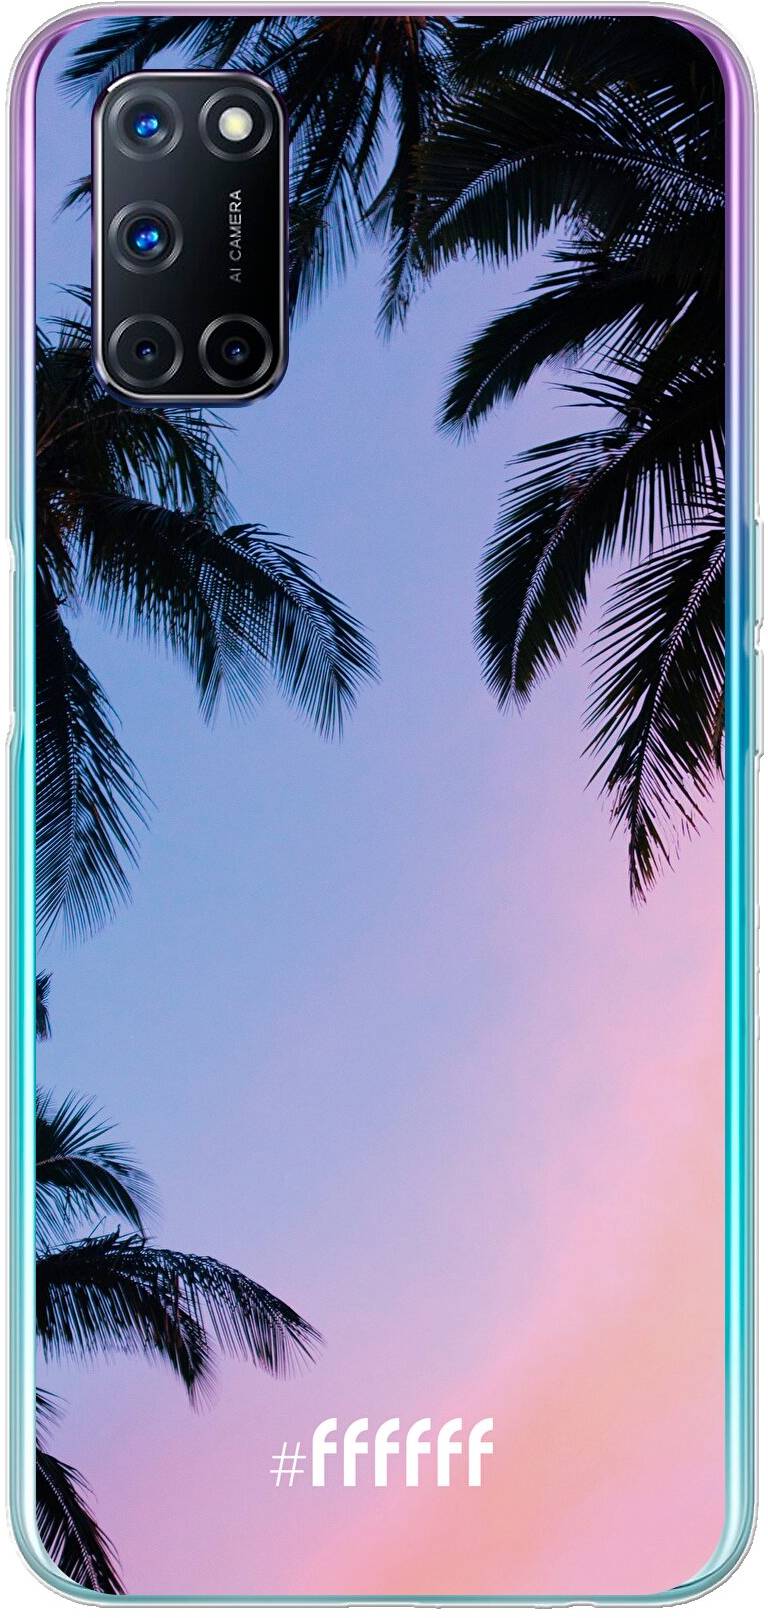 Sunset Palms A72